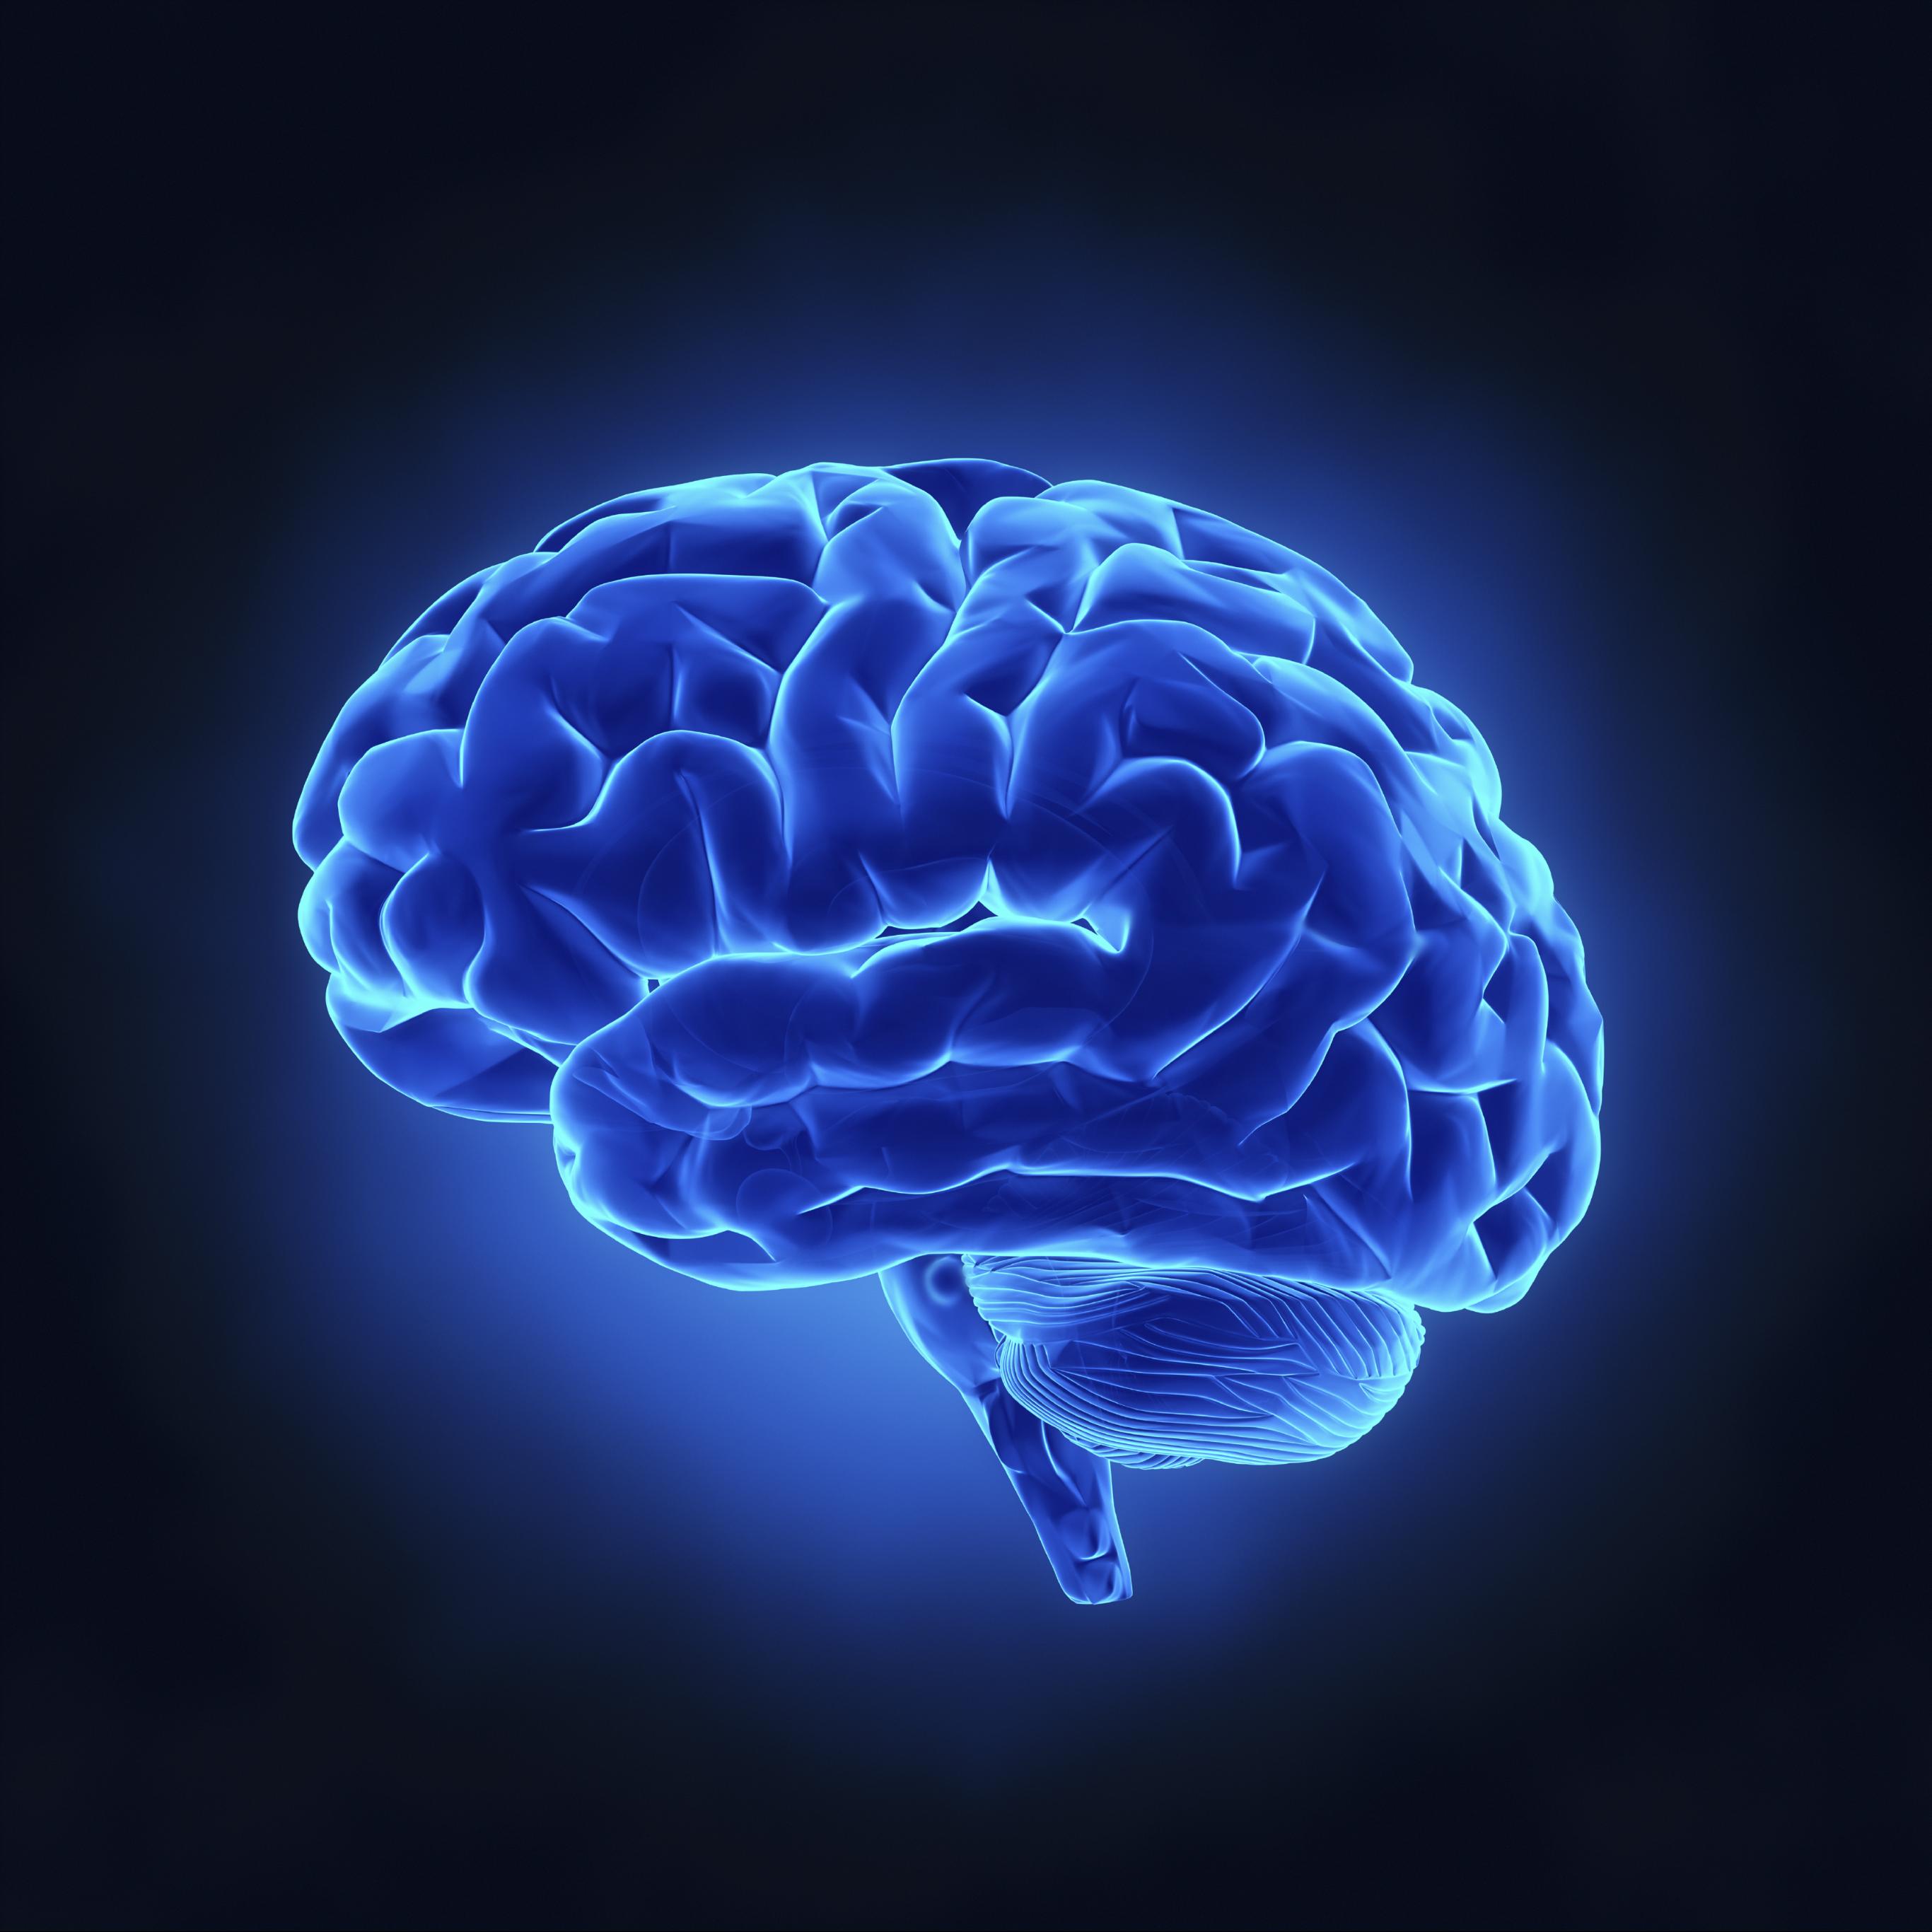 196 brain. Мозжечок мозга. Нейробиология мозга. Мозг на синем фоне.